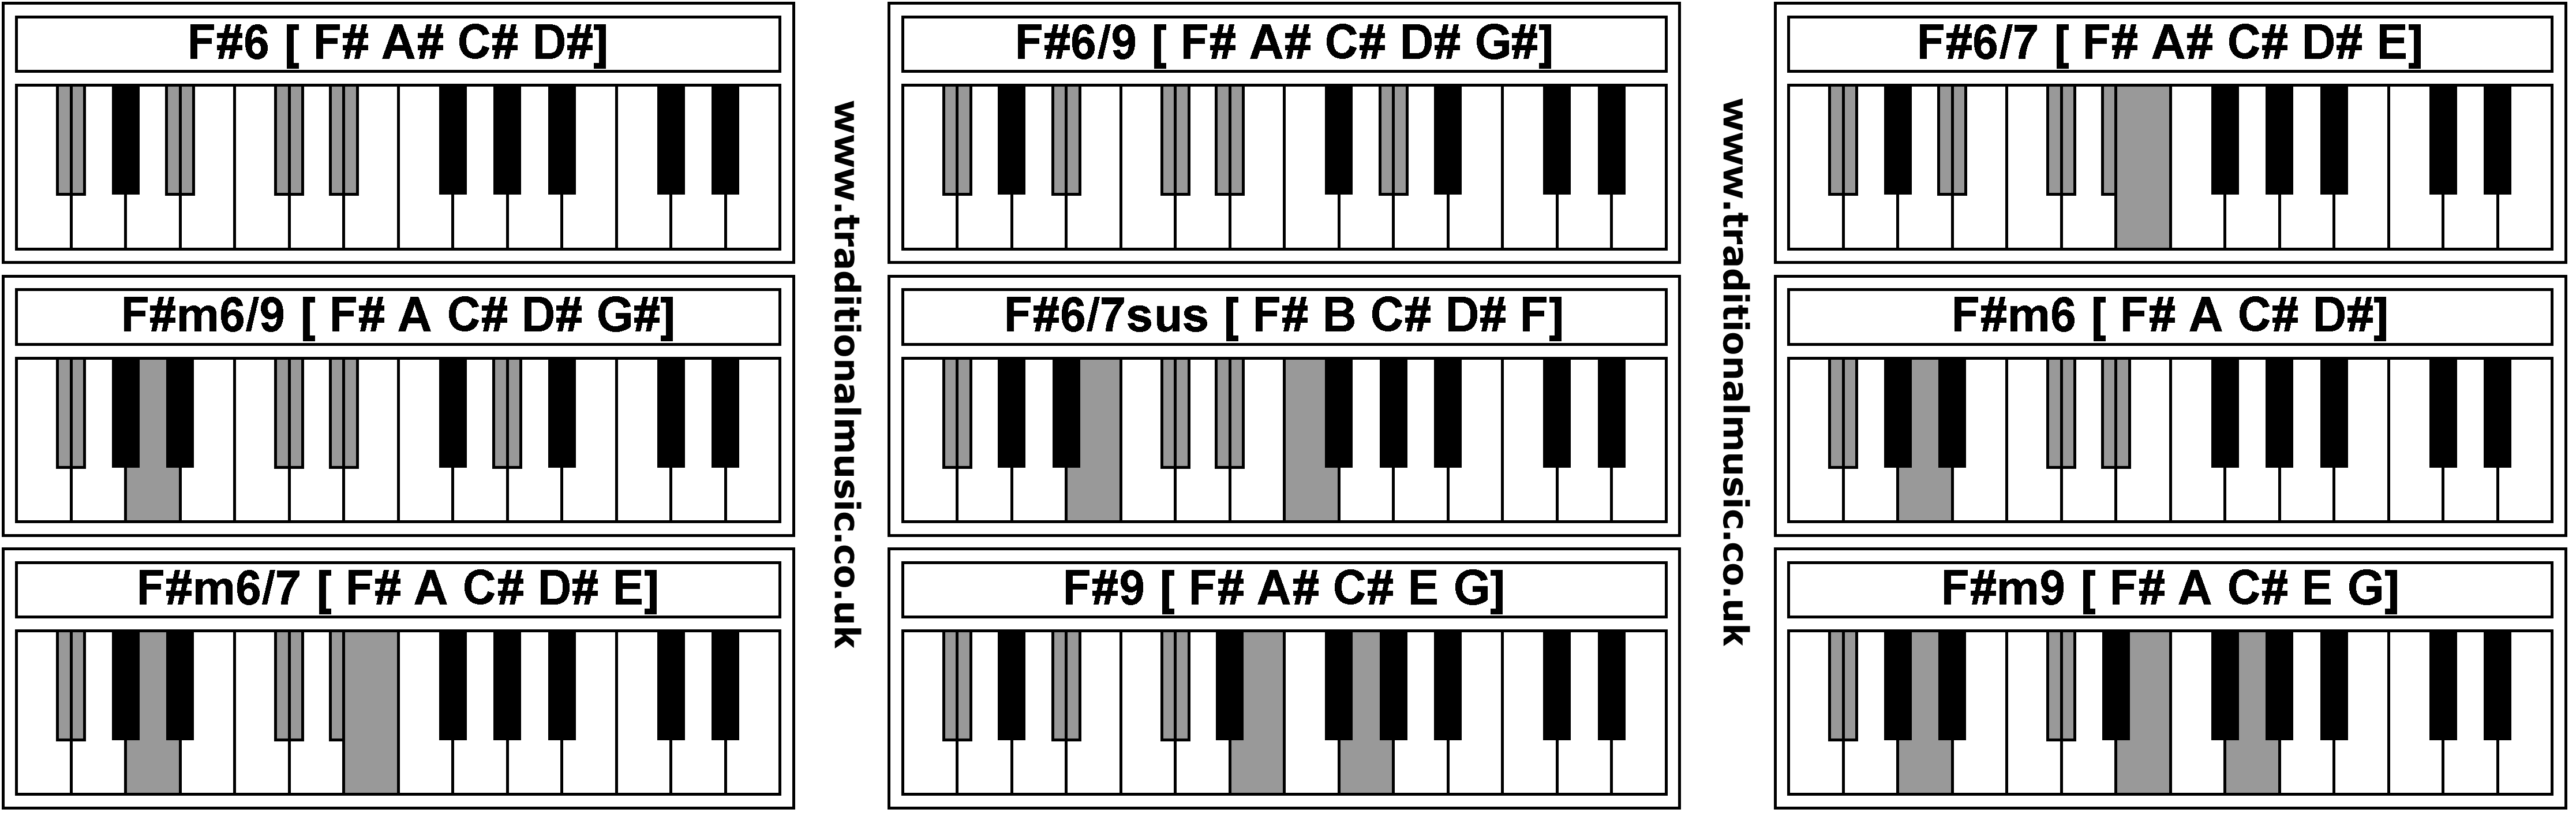 Piano Chords - F#6  F#6/9  F#6/7  F#m6/9  F#6/7sus  F#m6  F#m6/7  F#9  F#m9 